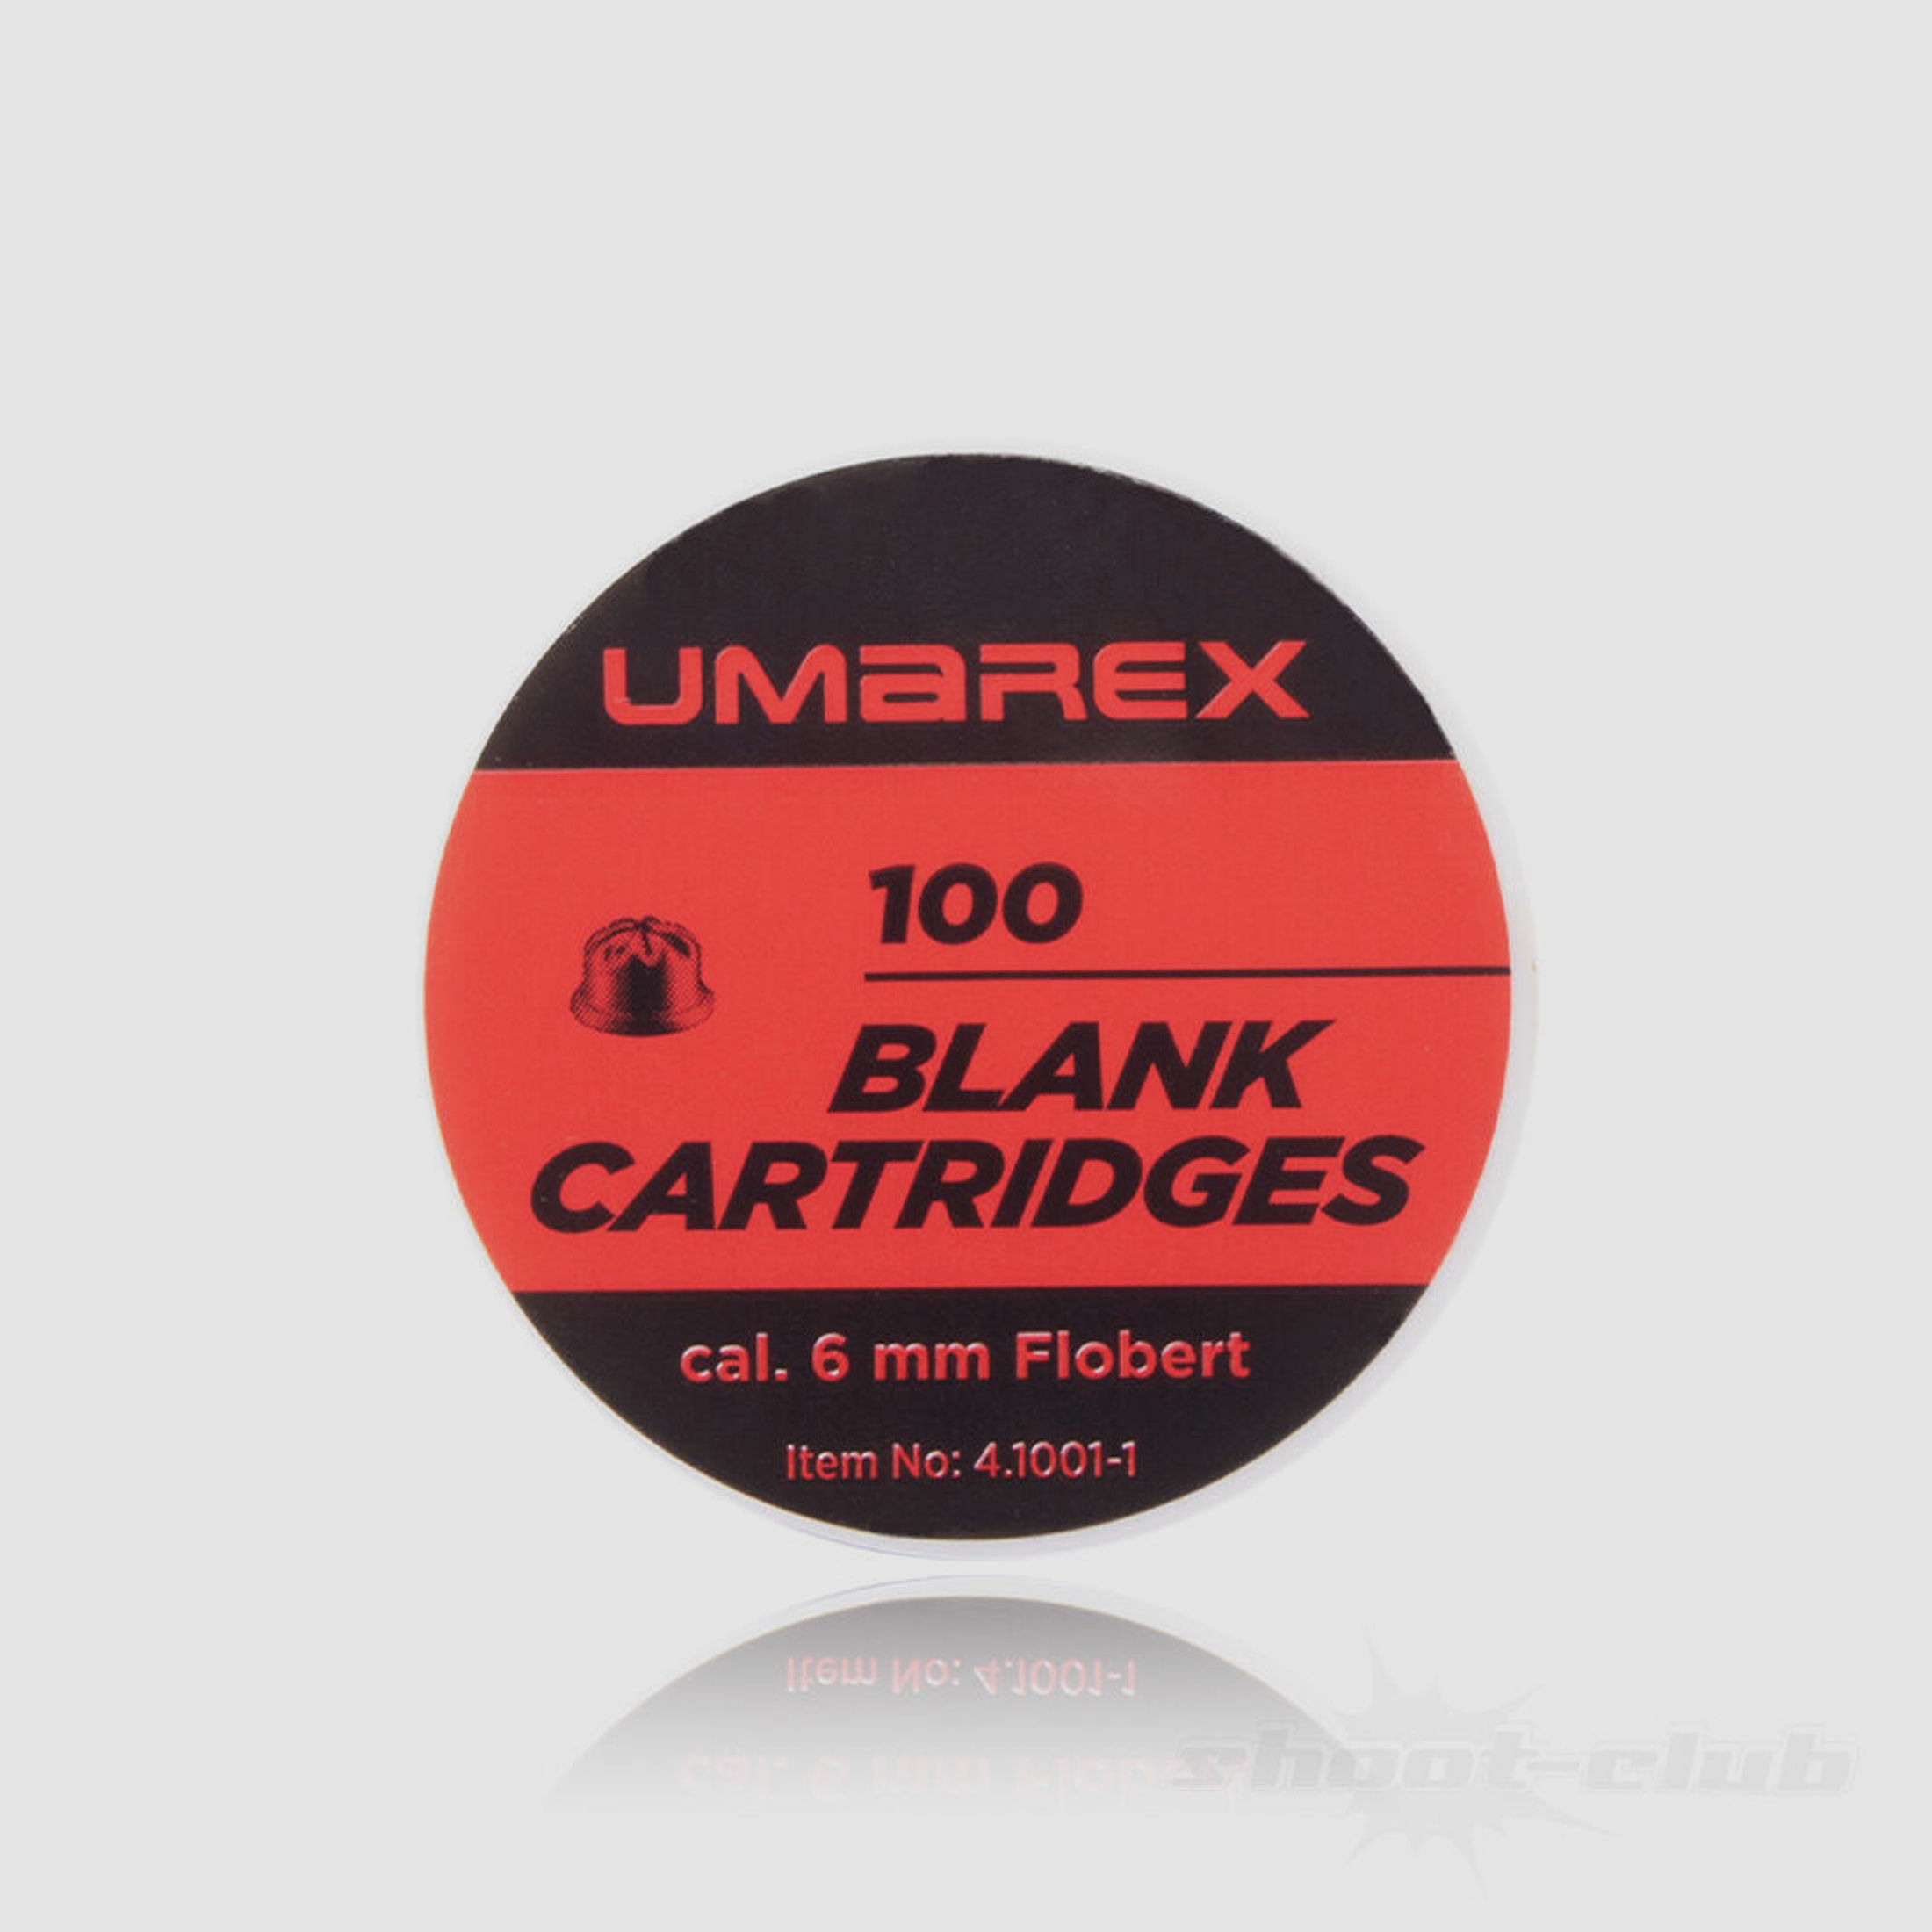 UMAREX	 Umarex Platzpatronen 6 mm Flobert - 100 Stück